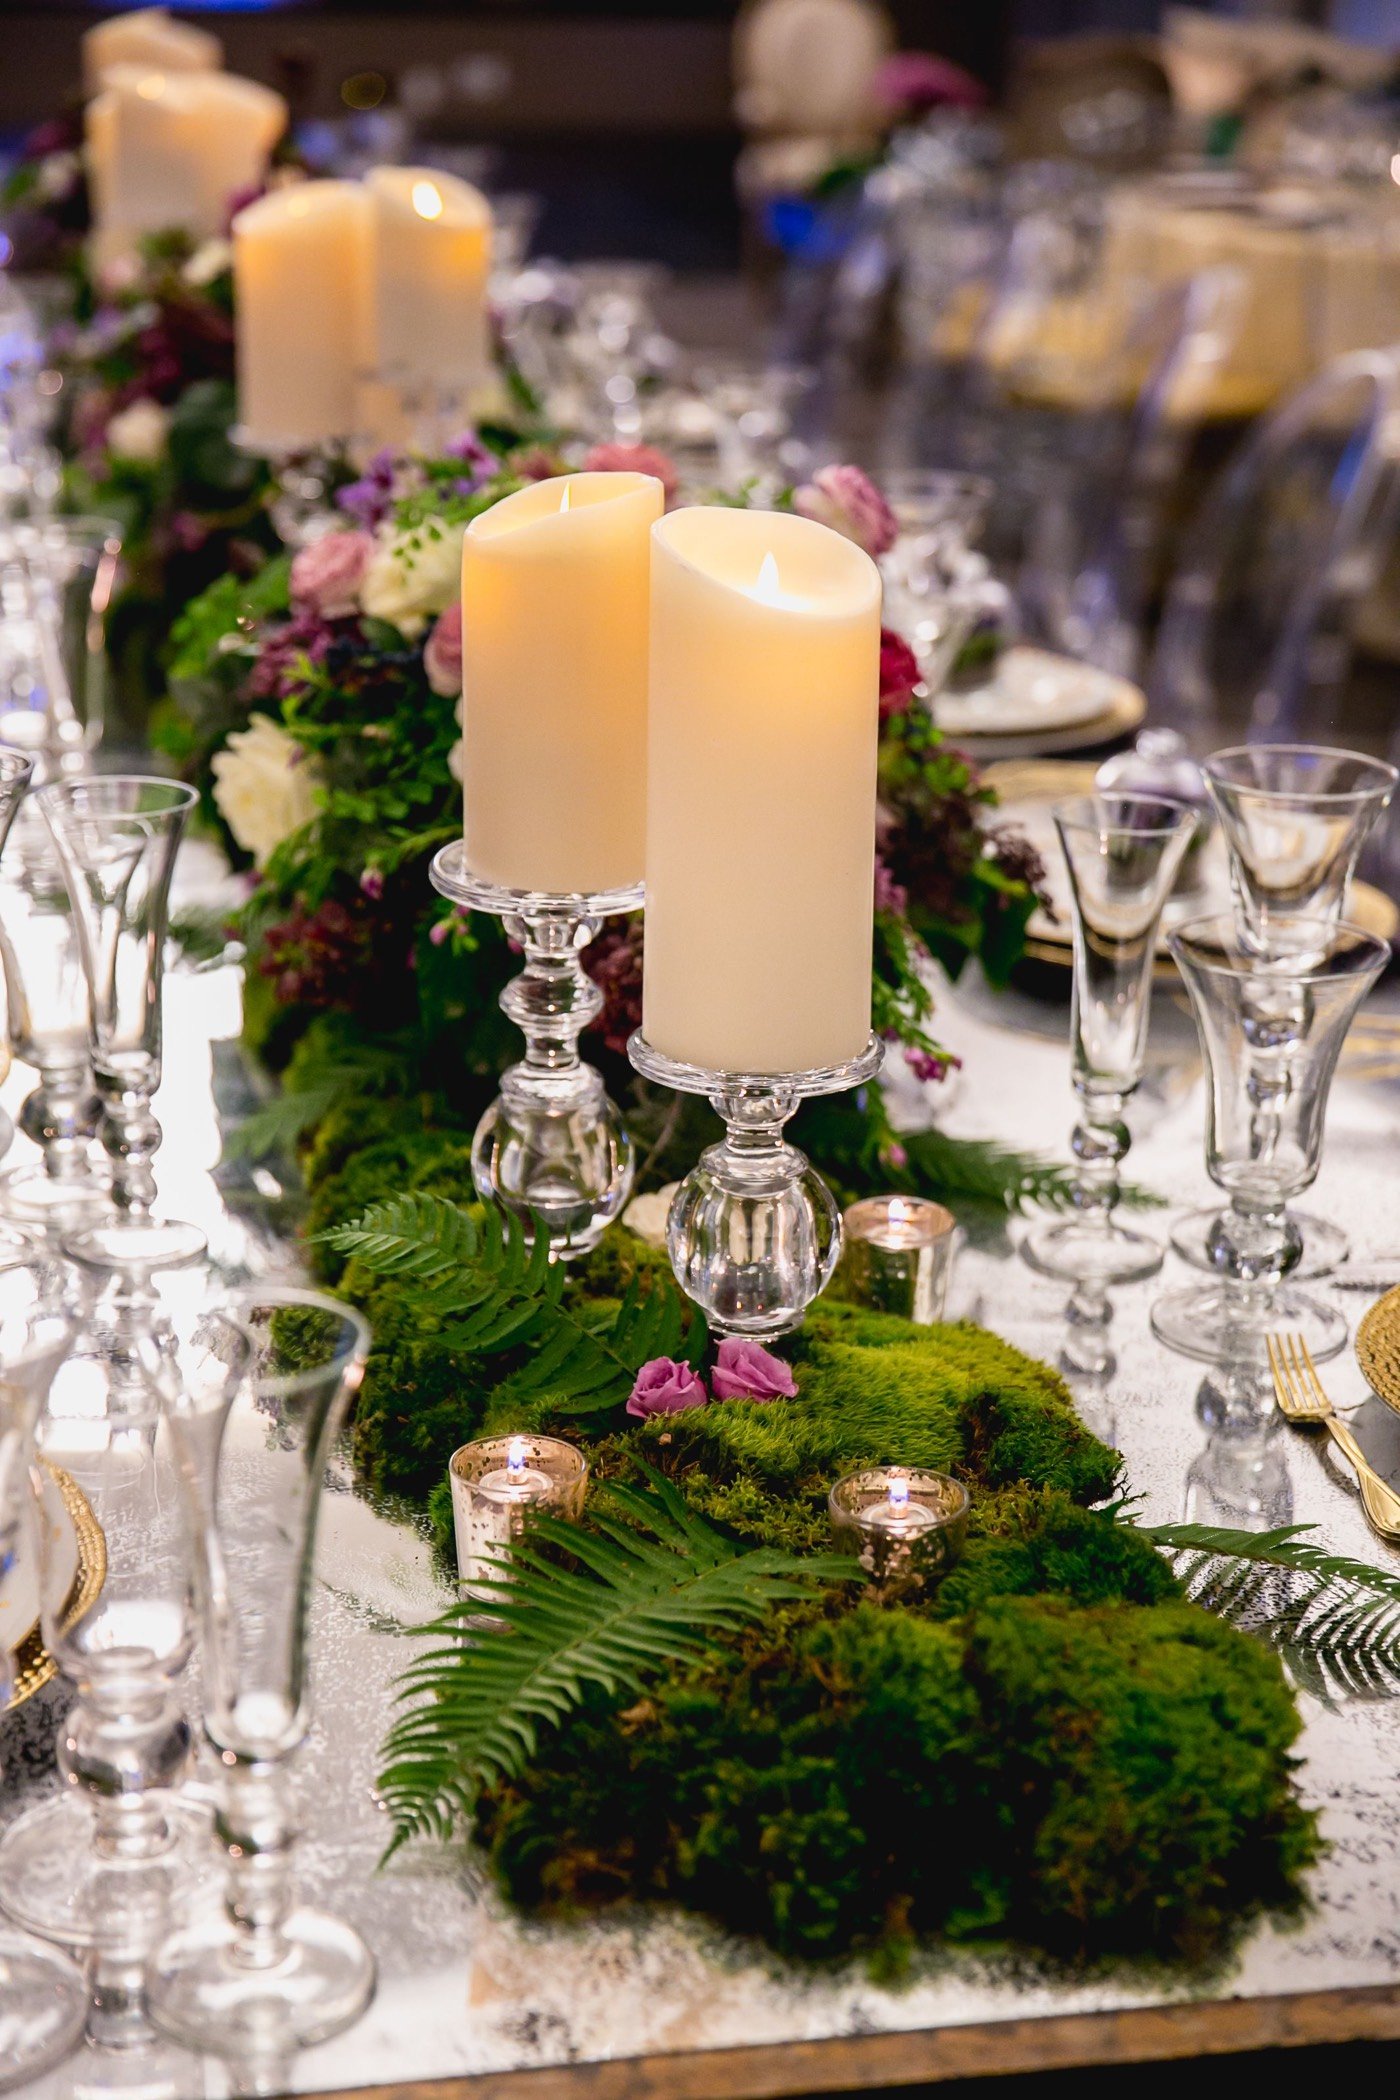 mousse végétale fraîche bougies compositions florales idée déco table mariage